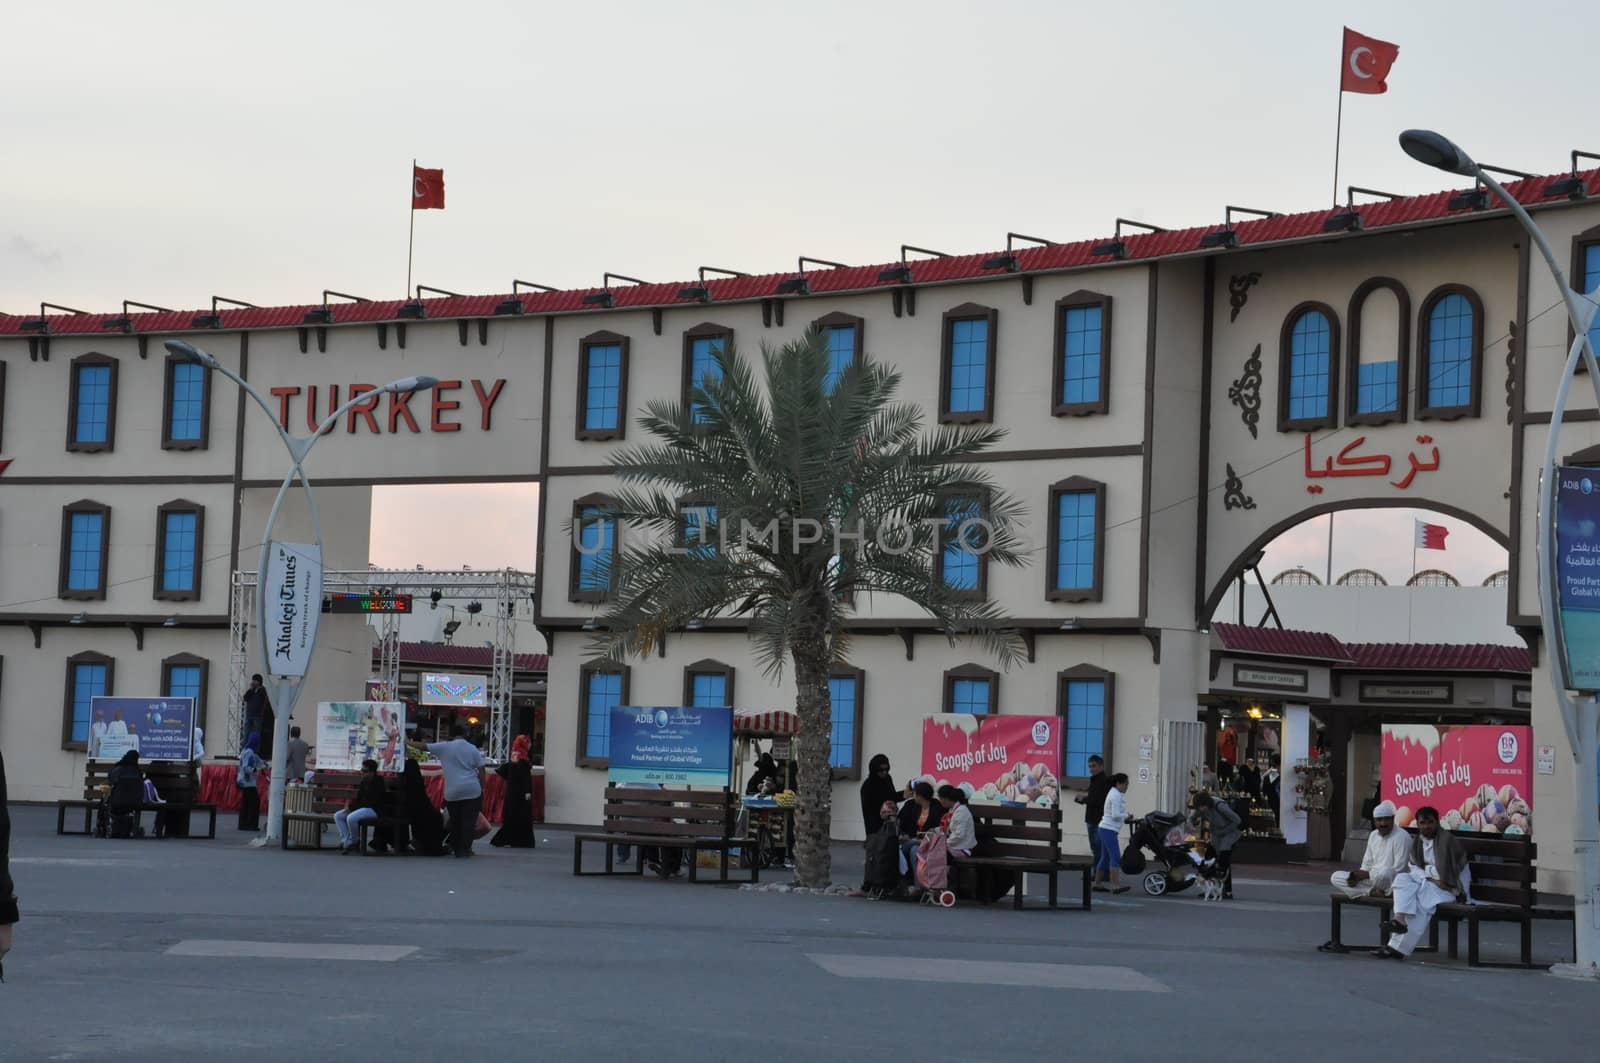 Turkey pavilion at Global Village in Dubai, UAE by sainaniritu